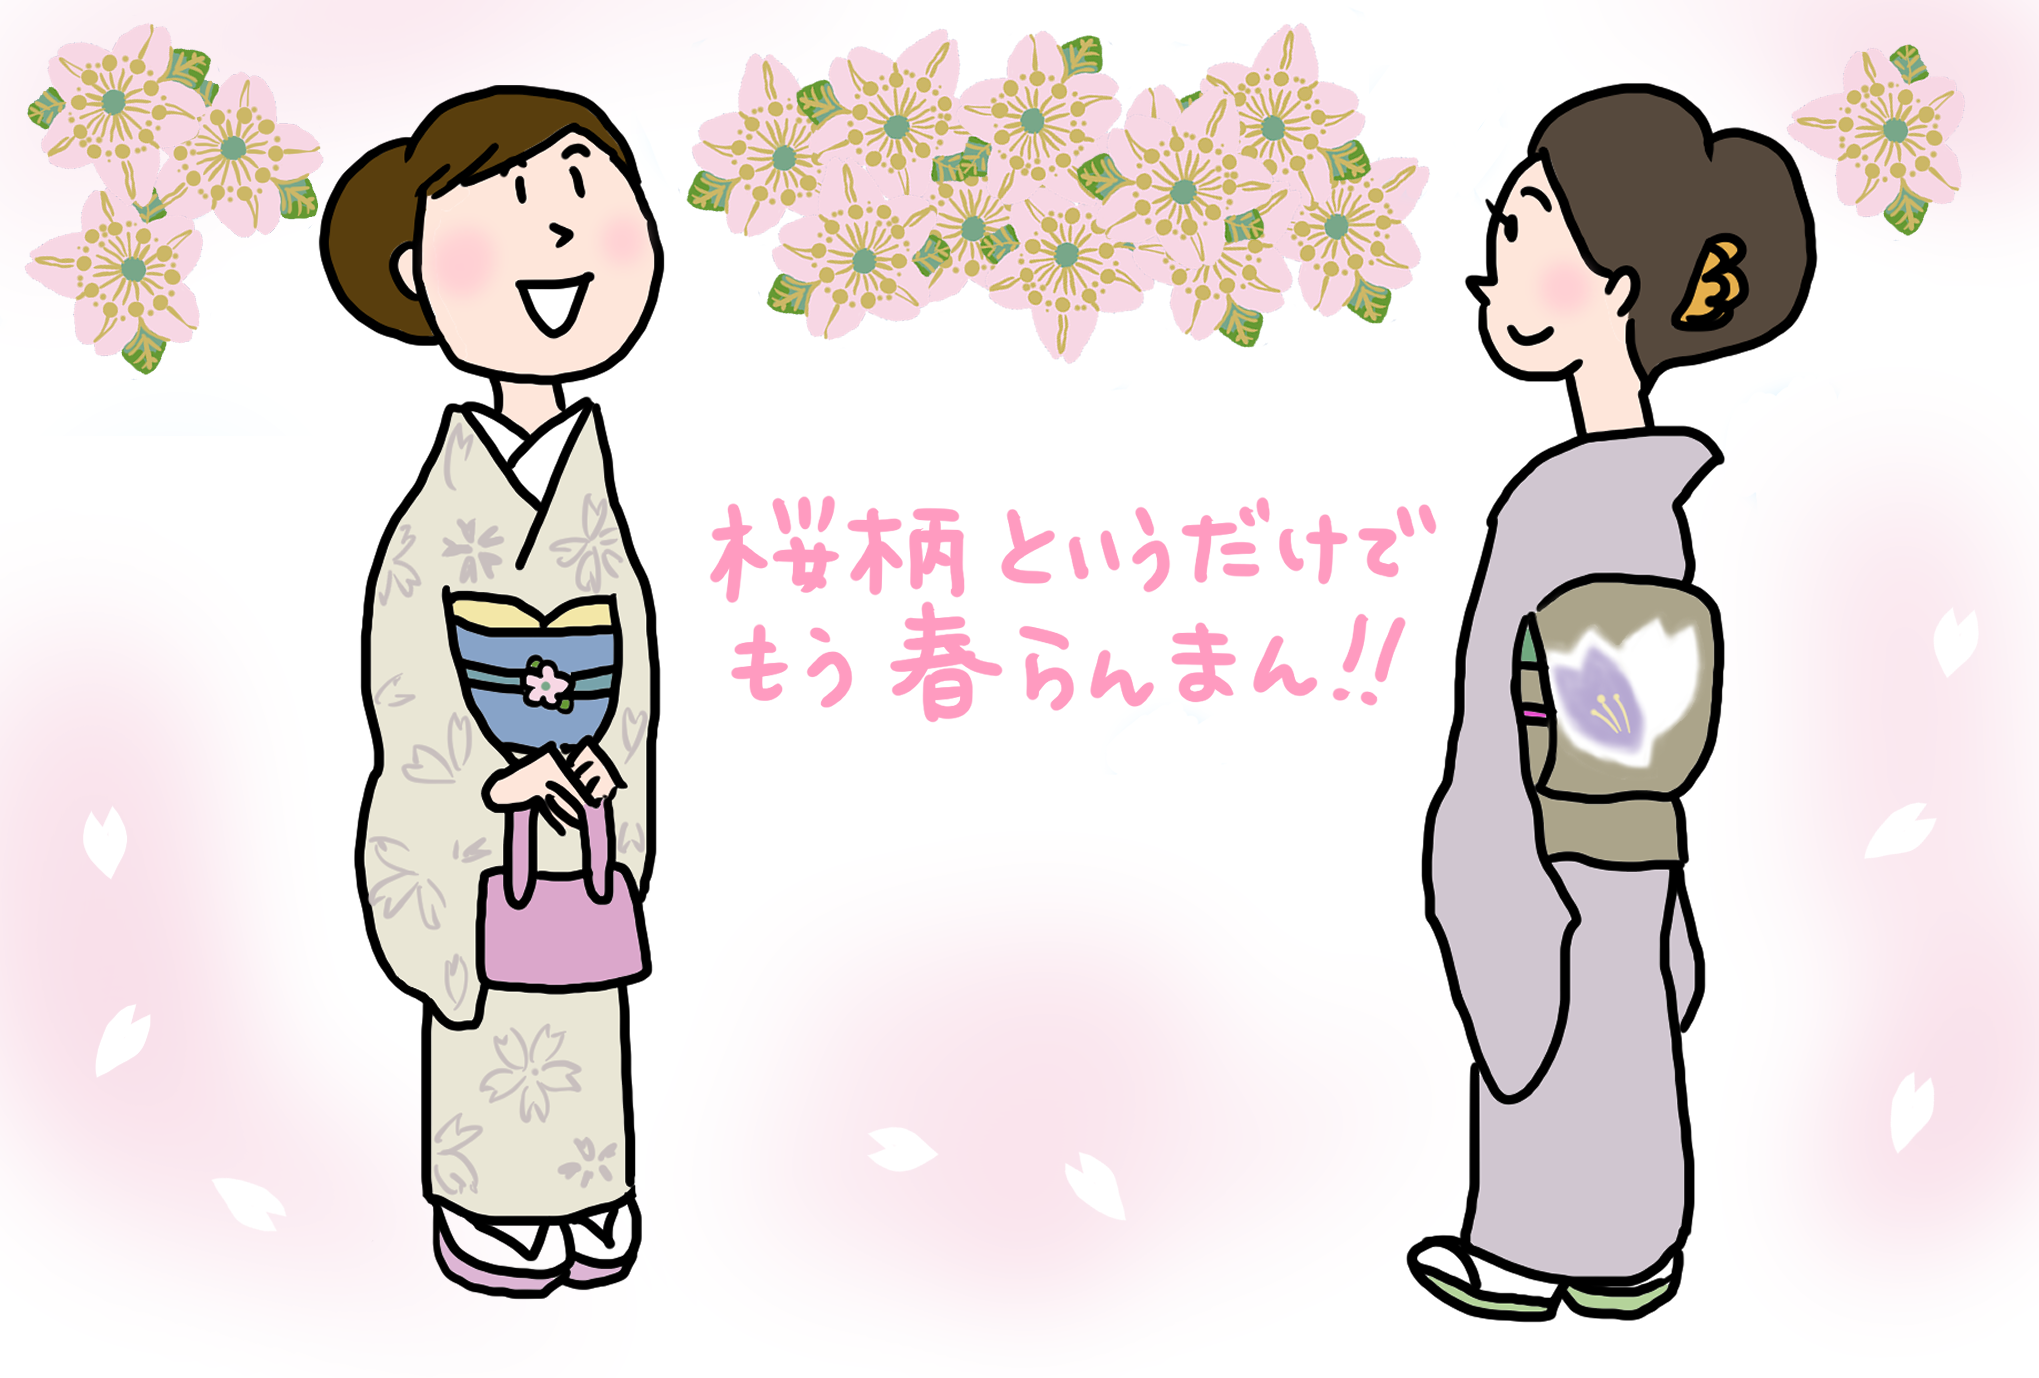 日本の国花は桜？ それとも菊？ 「きくちいまが、今考えるきもののこと